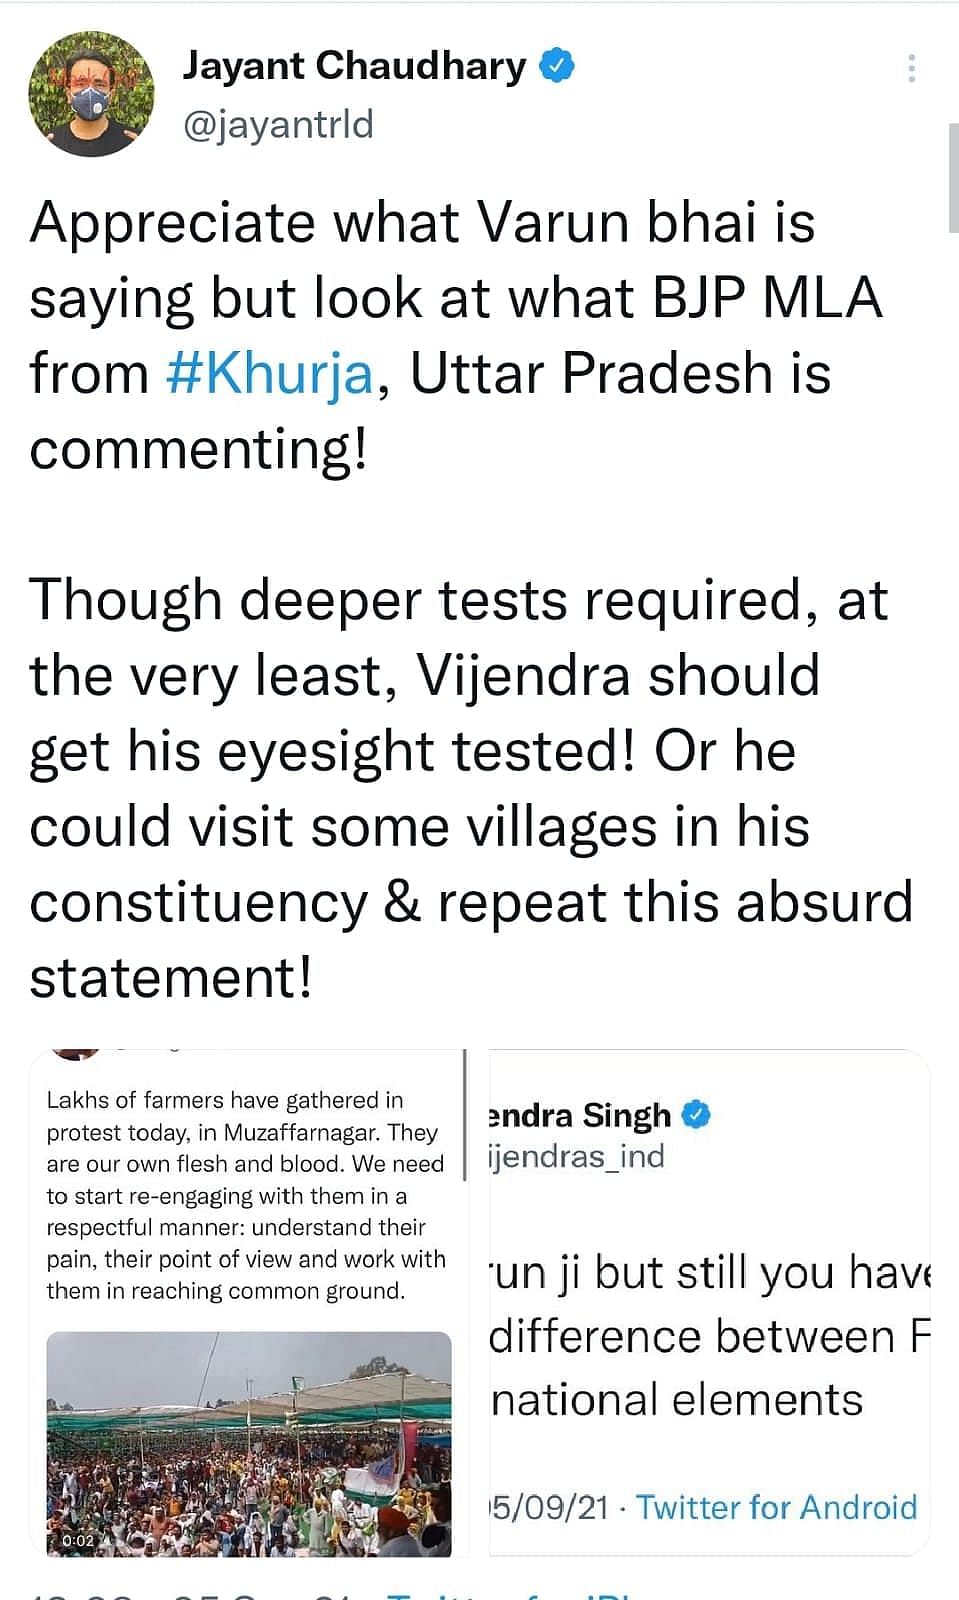 Varun Gandhi के ट्वीट को जयंत चौधरी का समर्थन मिला जबकि उनकी ही पार्टी के विधायक ने किया विरोध